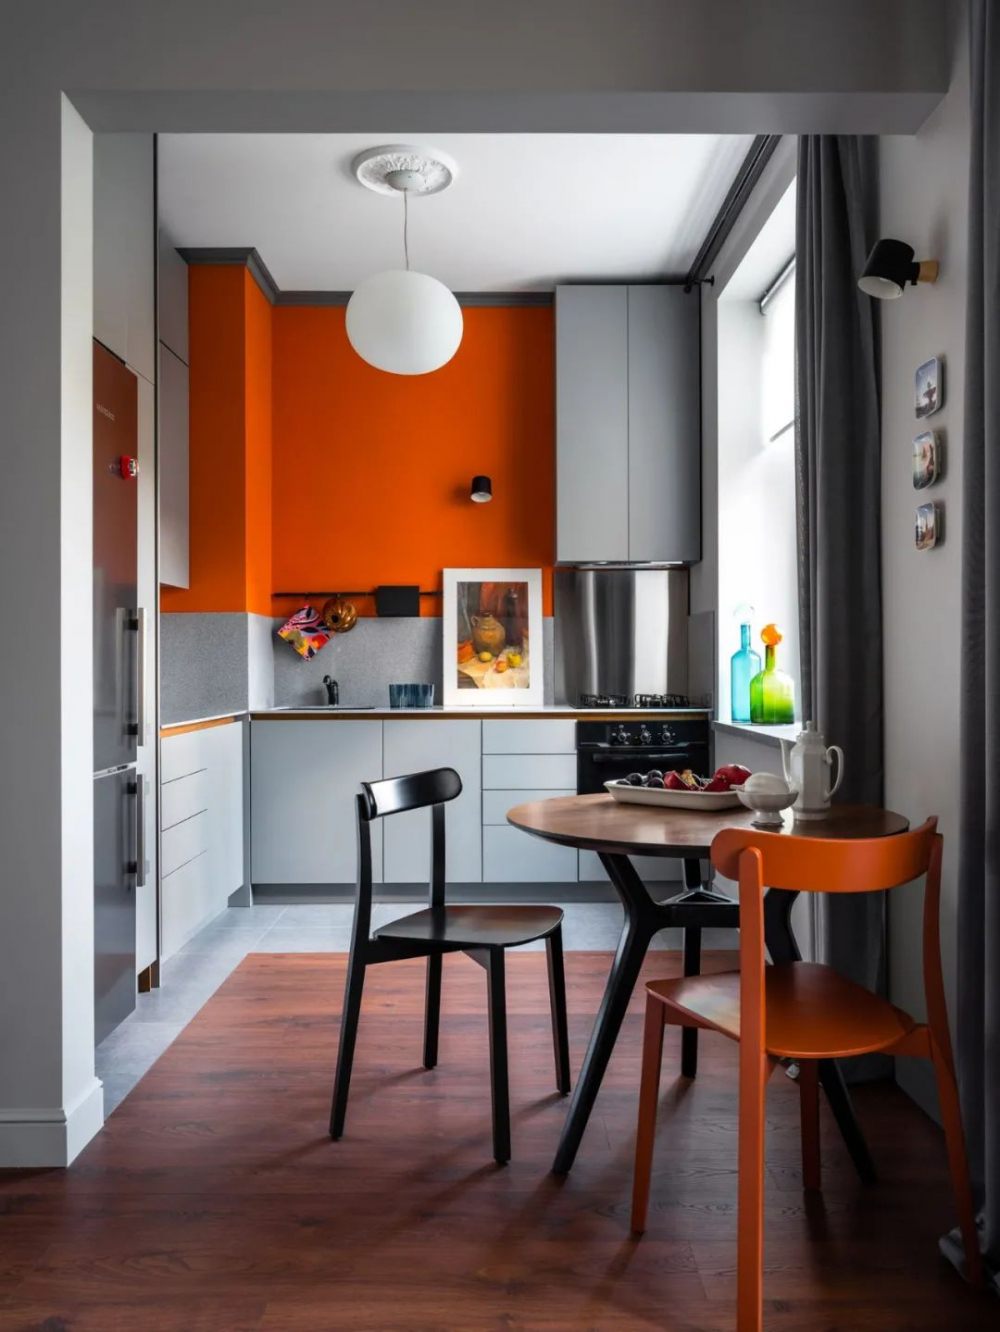 Những “tuyệt chiêu” thiết kế cho căn bếp 4-5m2, không gian nhỏ mà hiệu quả sử dụng vẫn hoàn hảo - Ảnh 11.